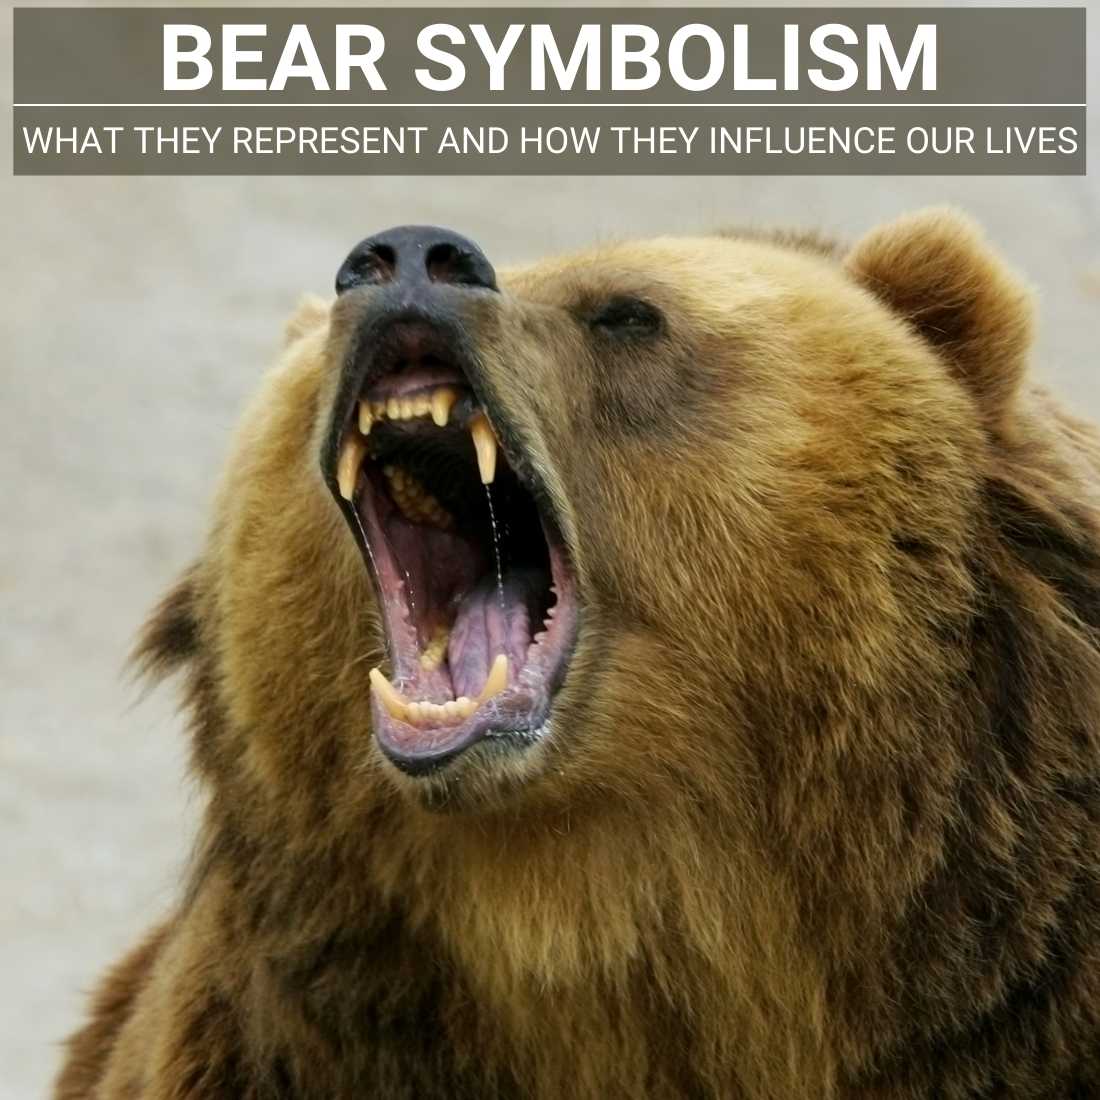 Bear symbolism